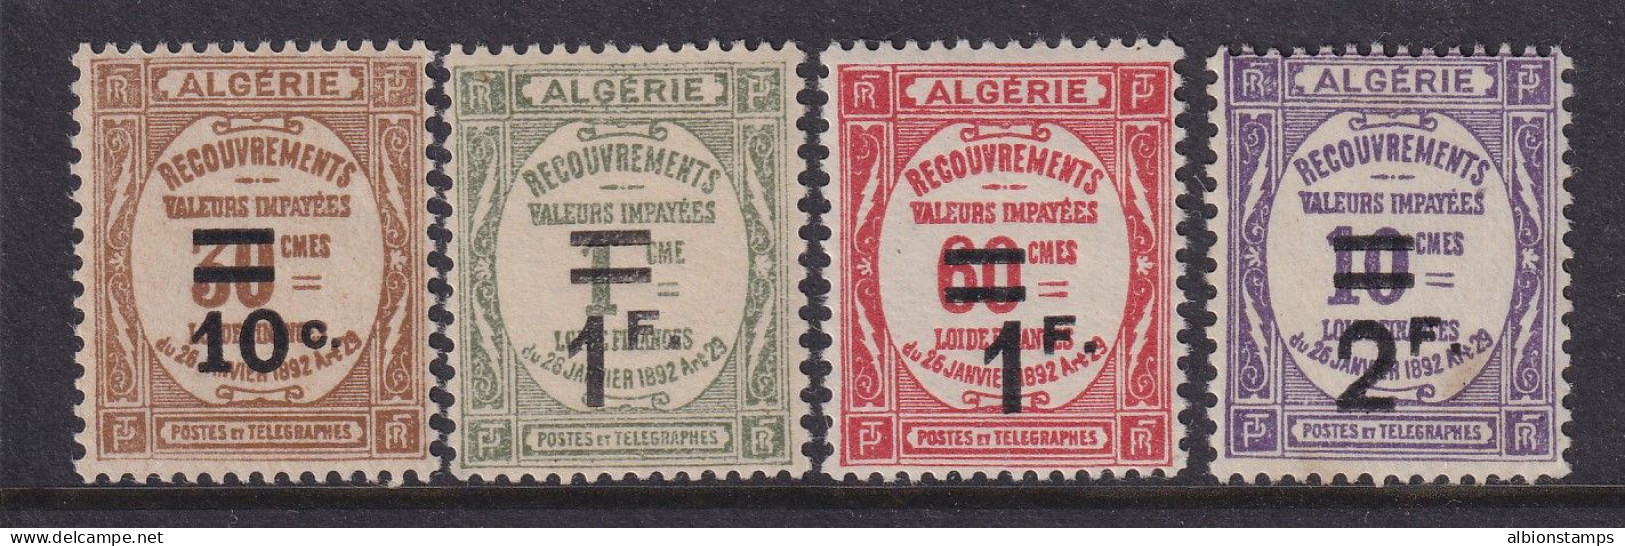 Algeria, Scott J21-J24 (Yvert TT21-TT24), MLH - Impuestos